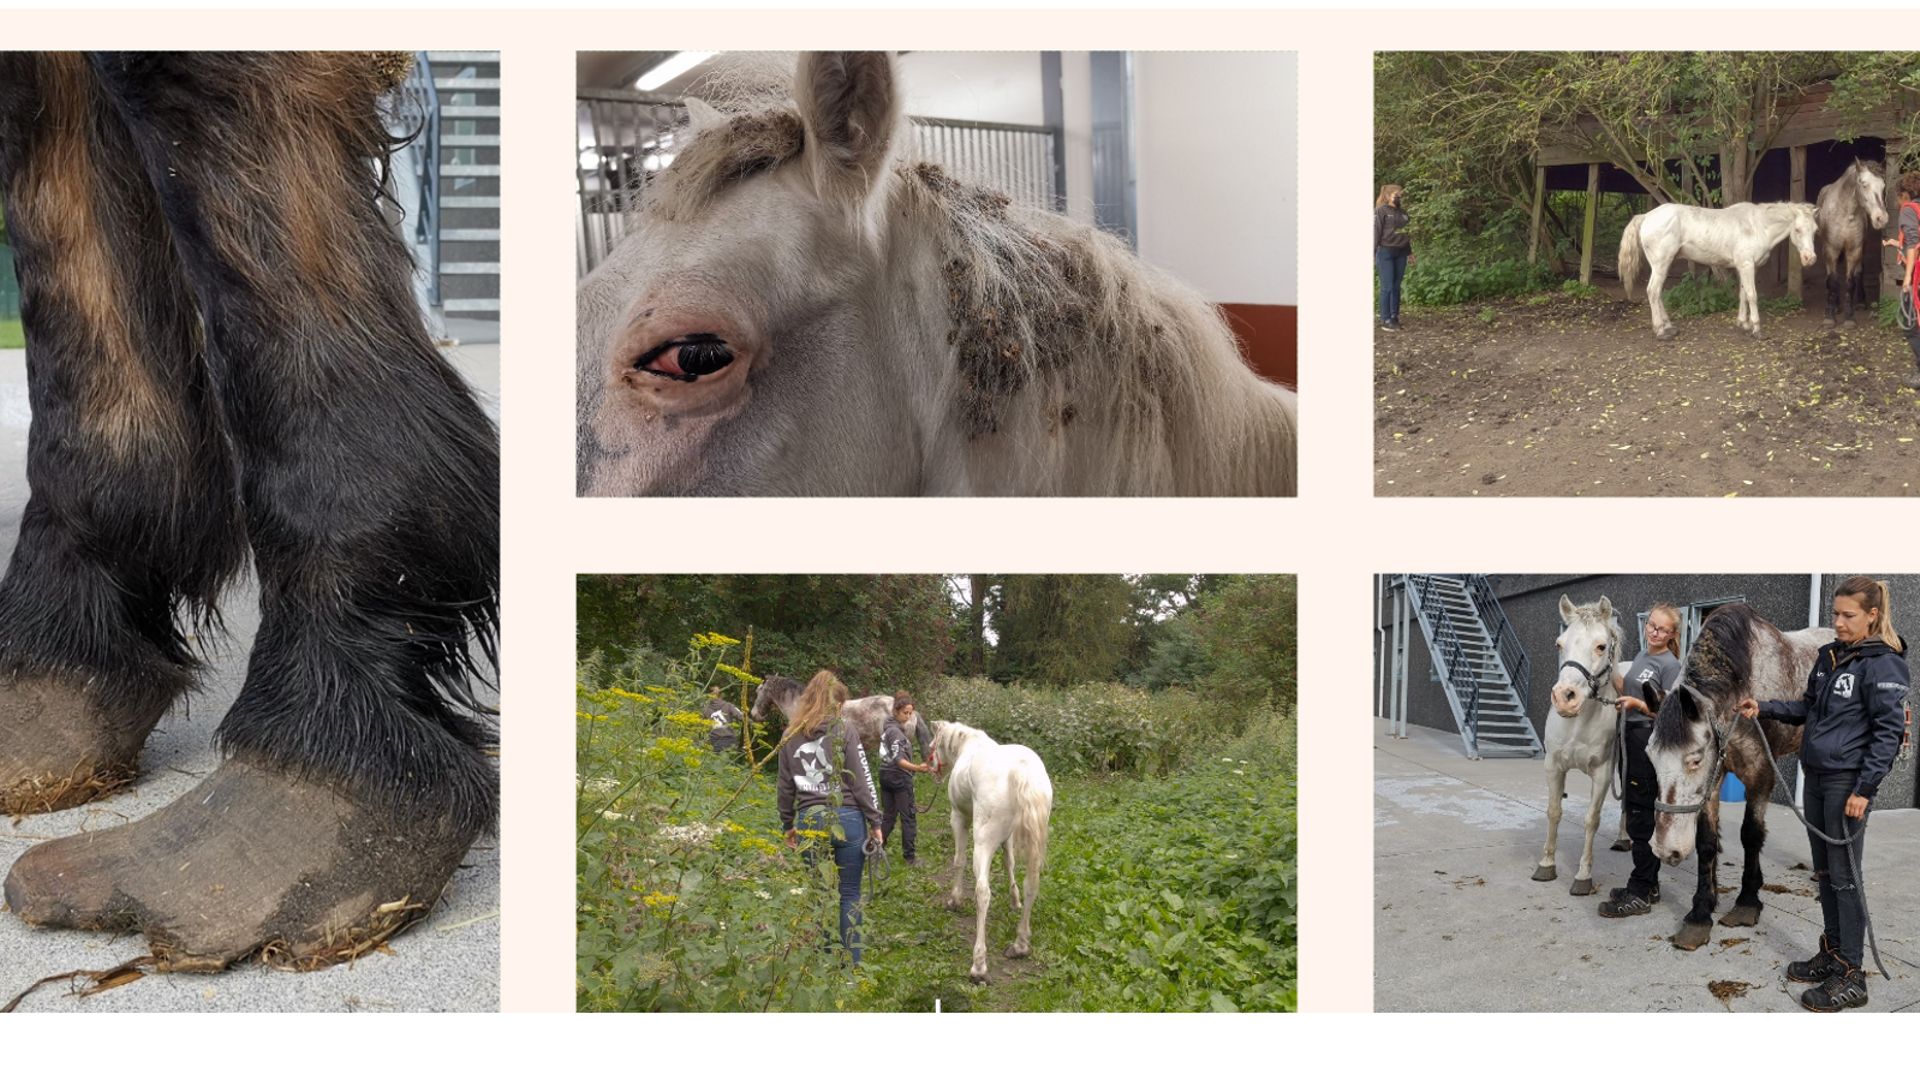 Quelques vues de l'état des chevaux et leur évacuation par l'association de protection des animaux.